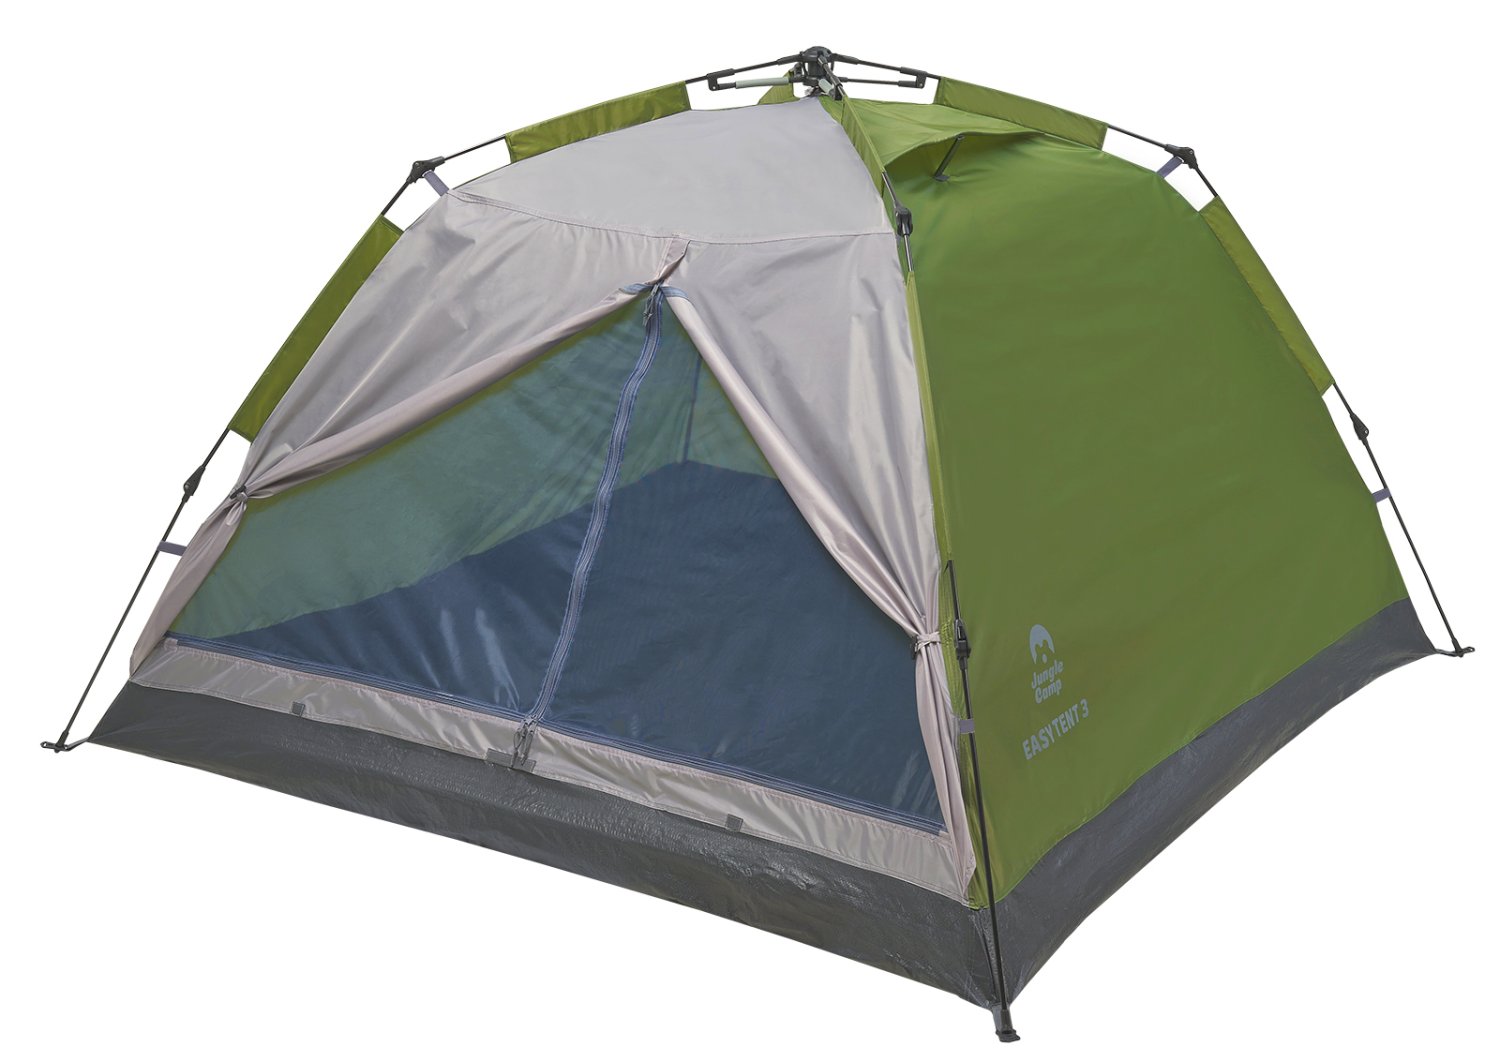 Палатка JUNGLE CAMP Easy Tent 3, зеленый/серый, 70861 палатка jungle camp easy tent camo 2 камуфляж 70863